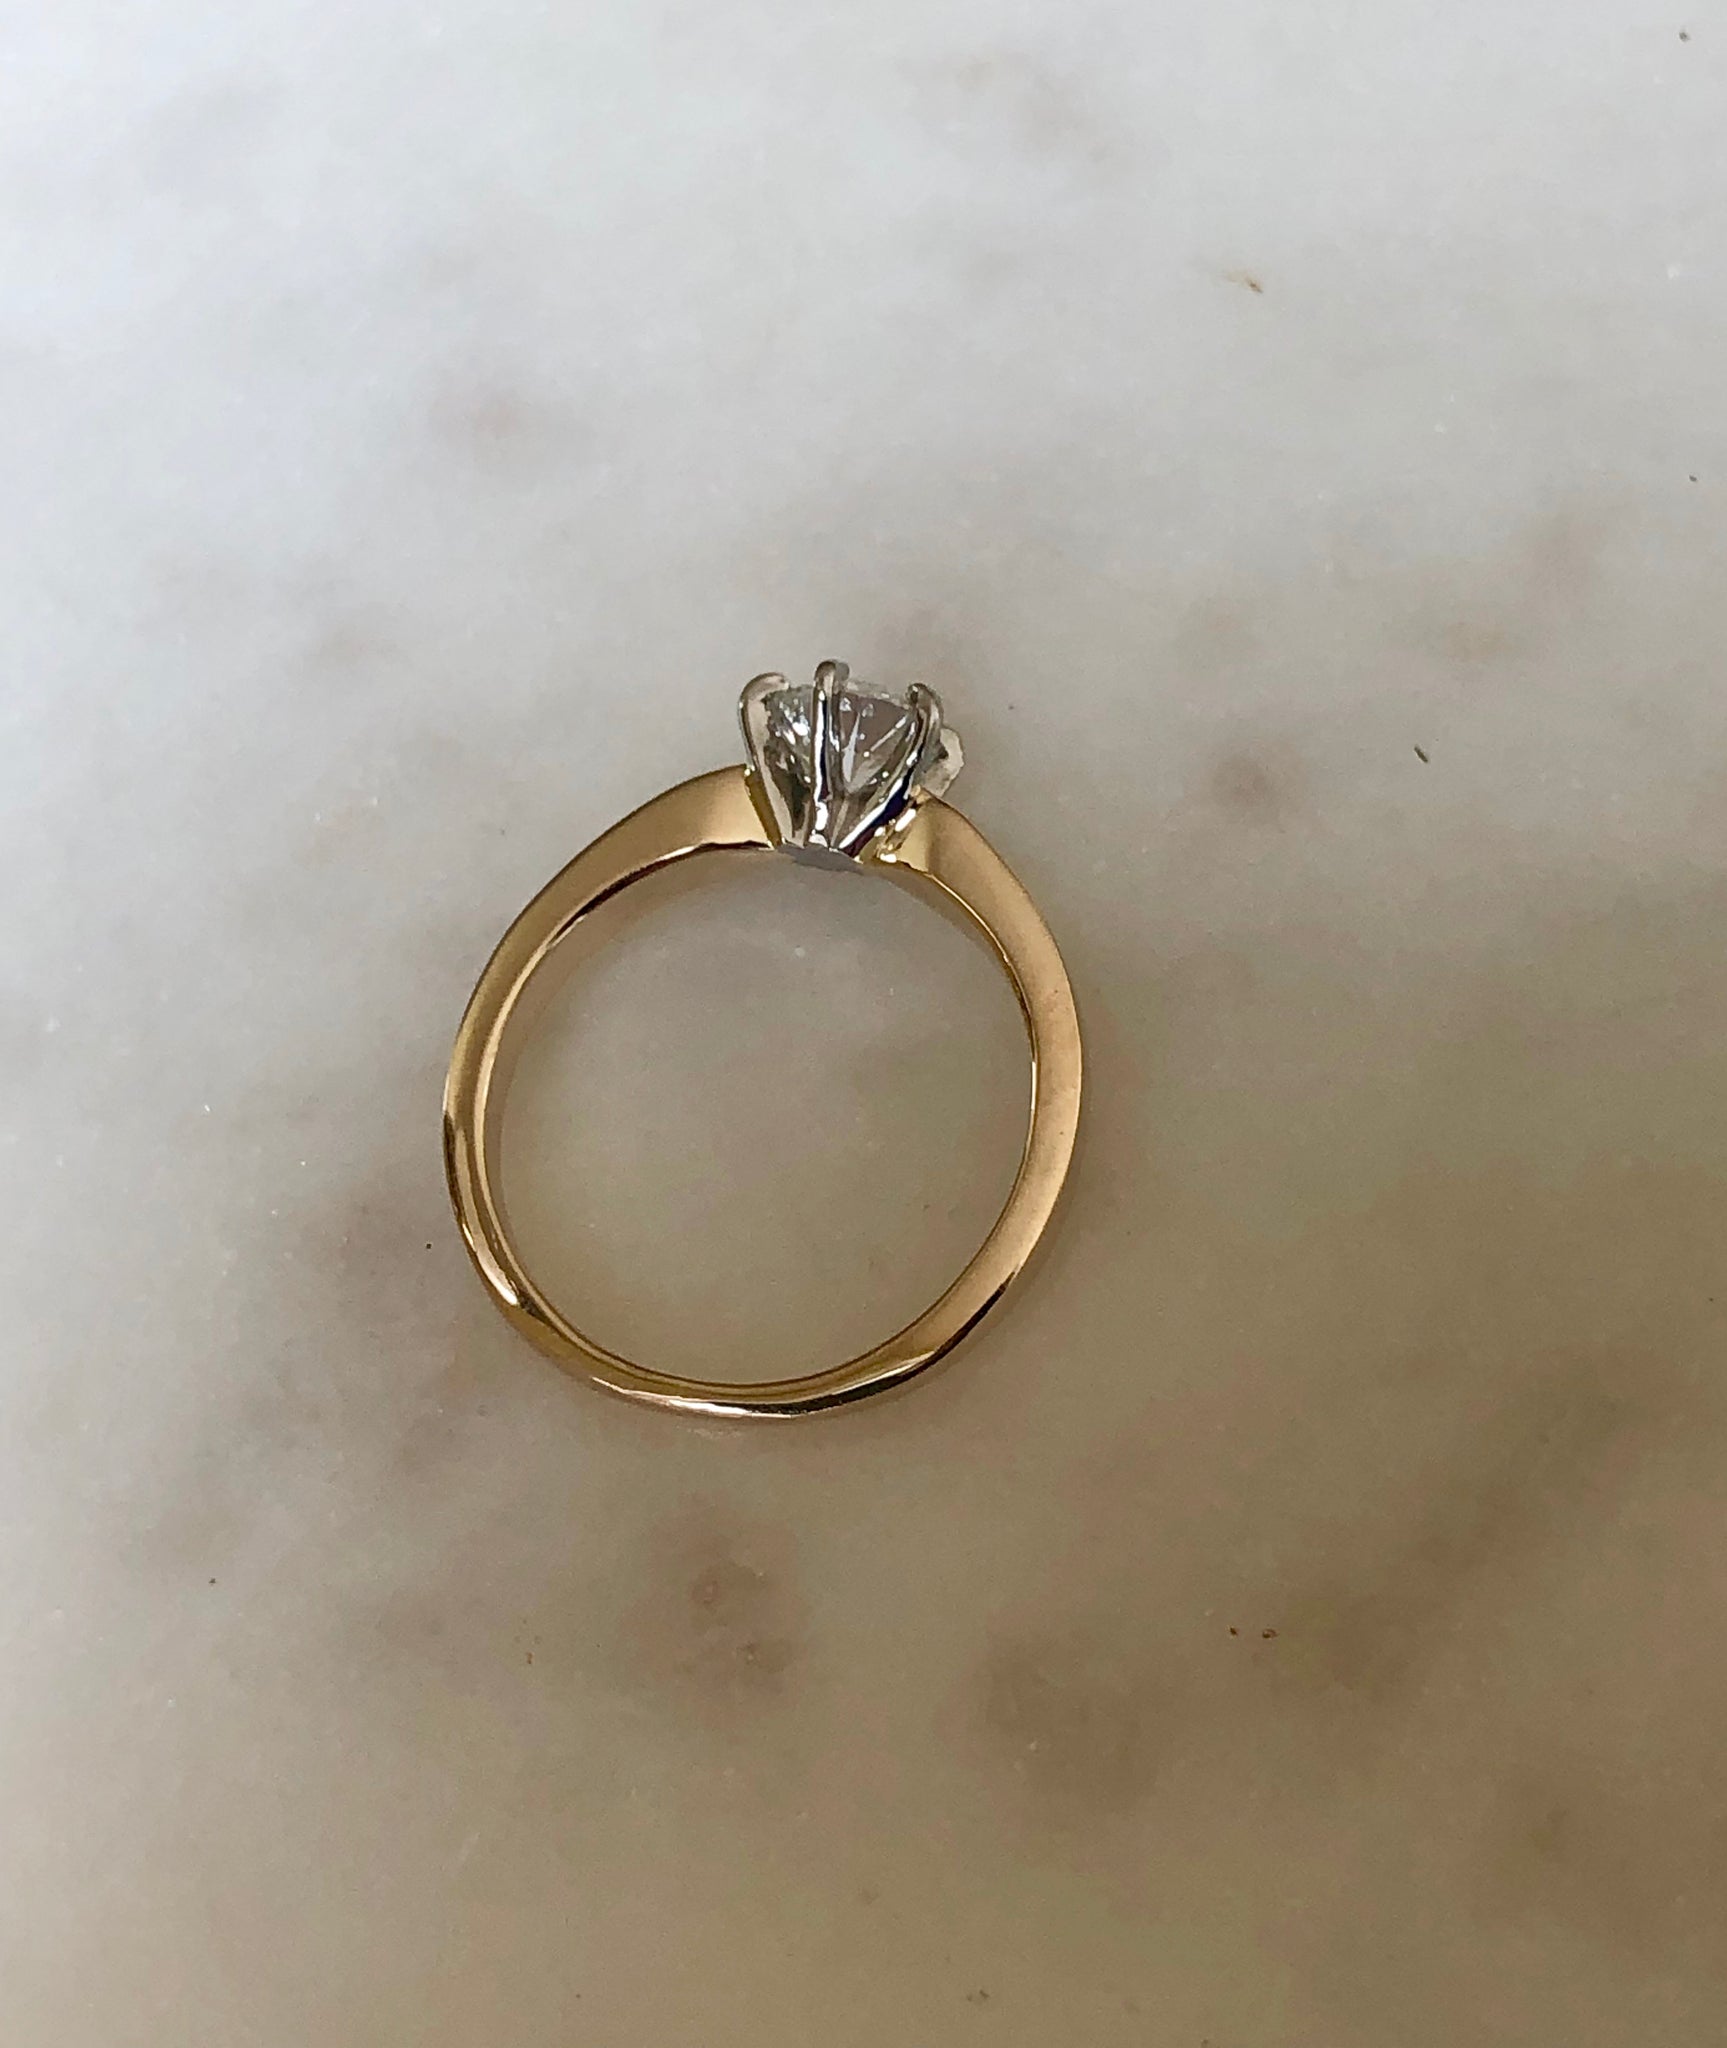 Vintage 0.75 Carat Natural Diamond Engagement Ring 18K & Platinum